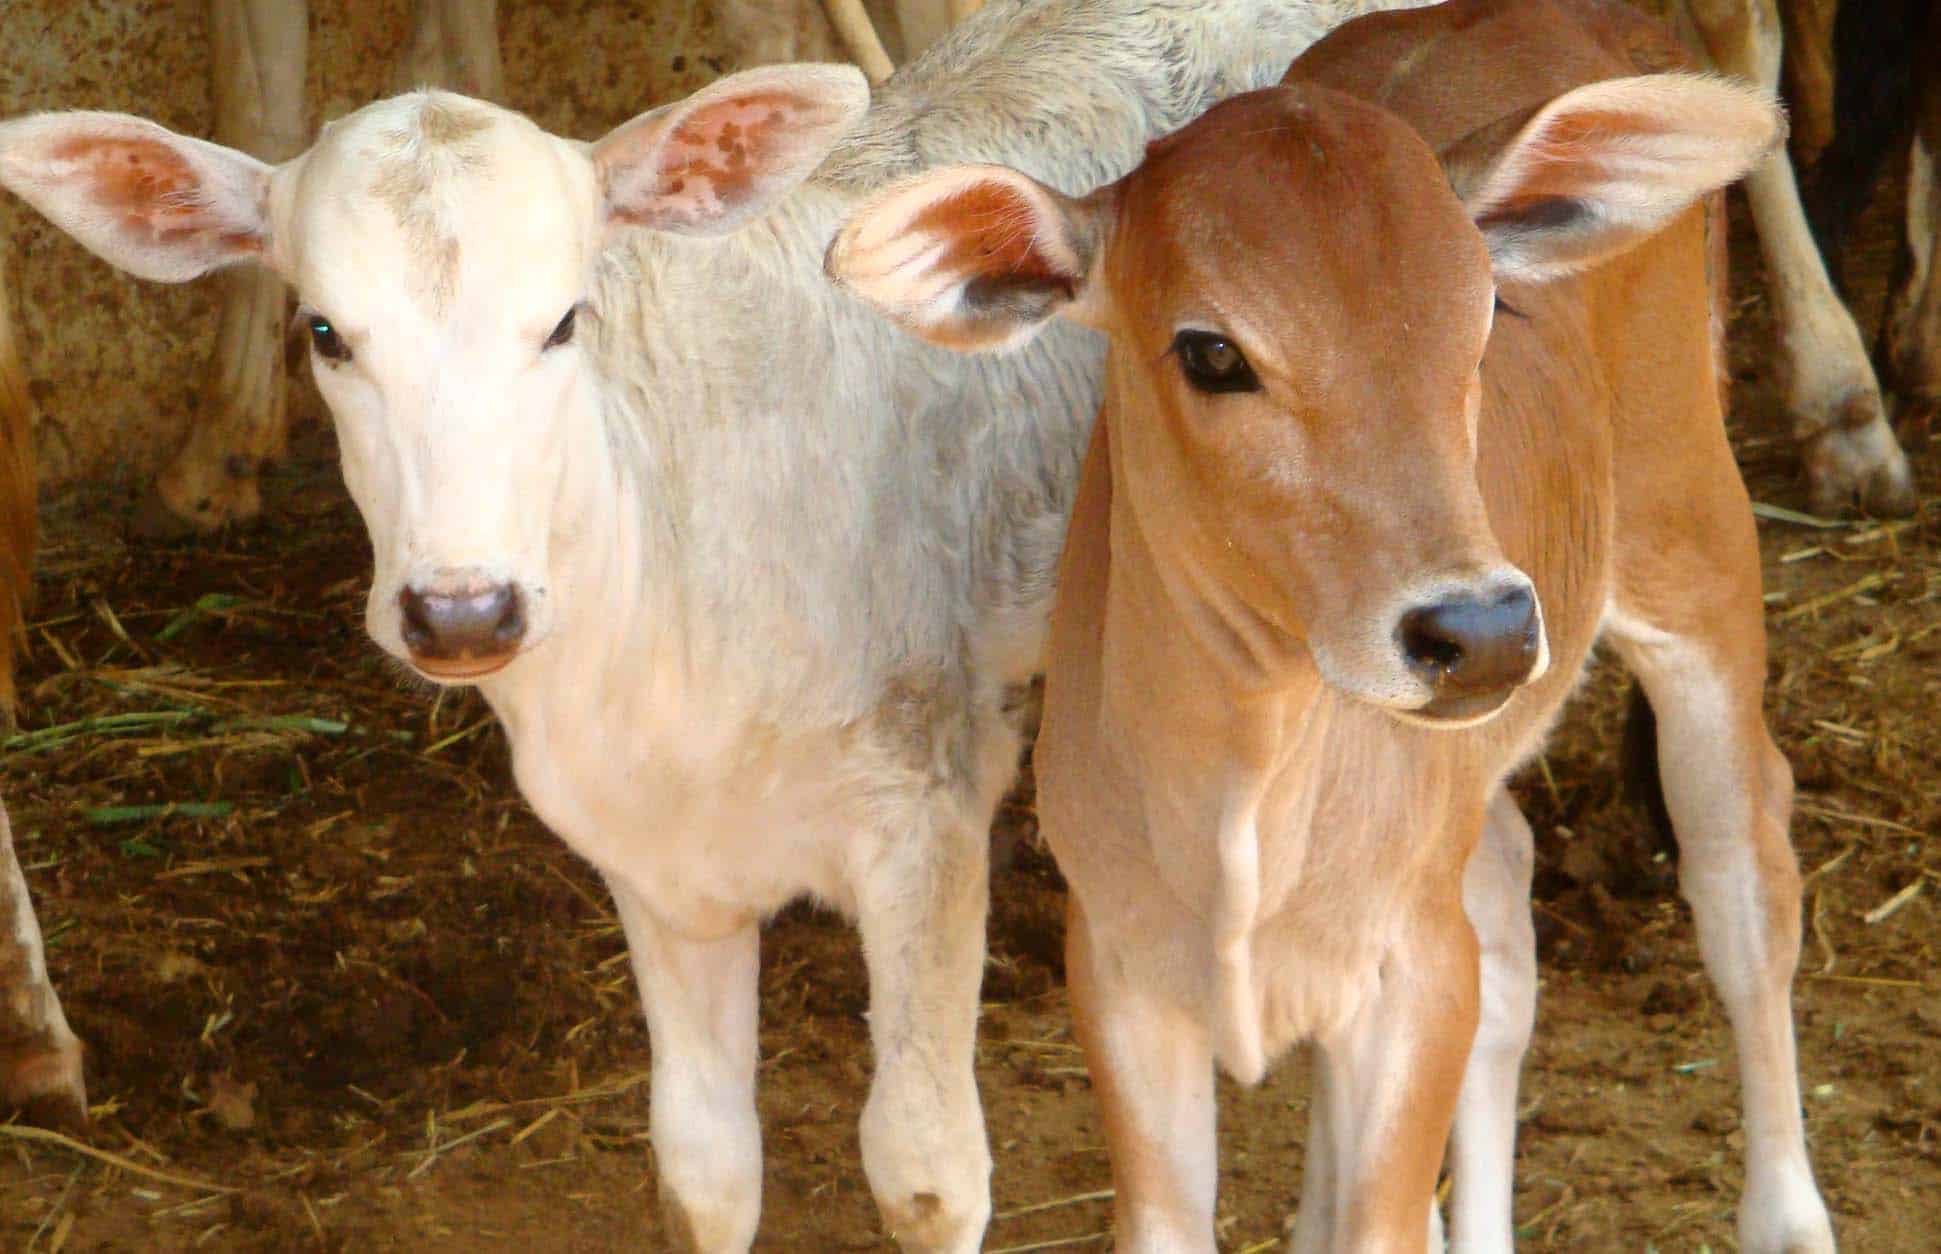 વાછરડાં-પાડીઓનો શારીરિક વિકાસ » Development of Calves